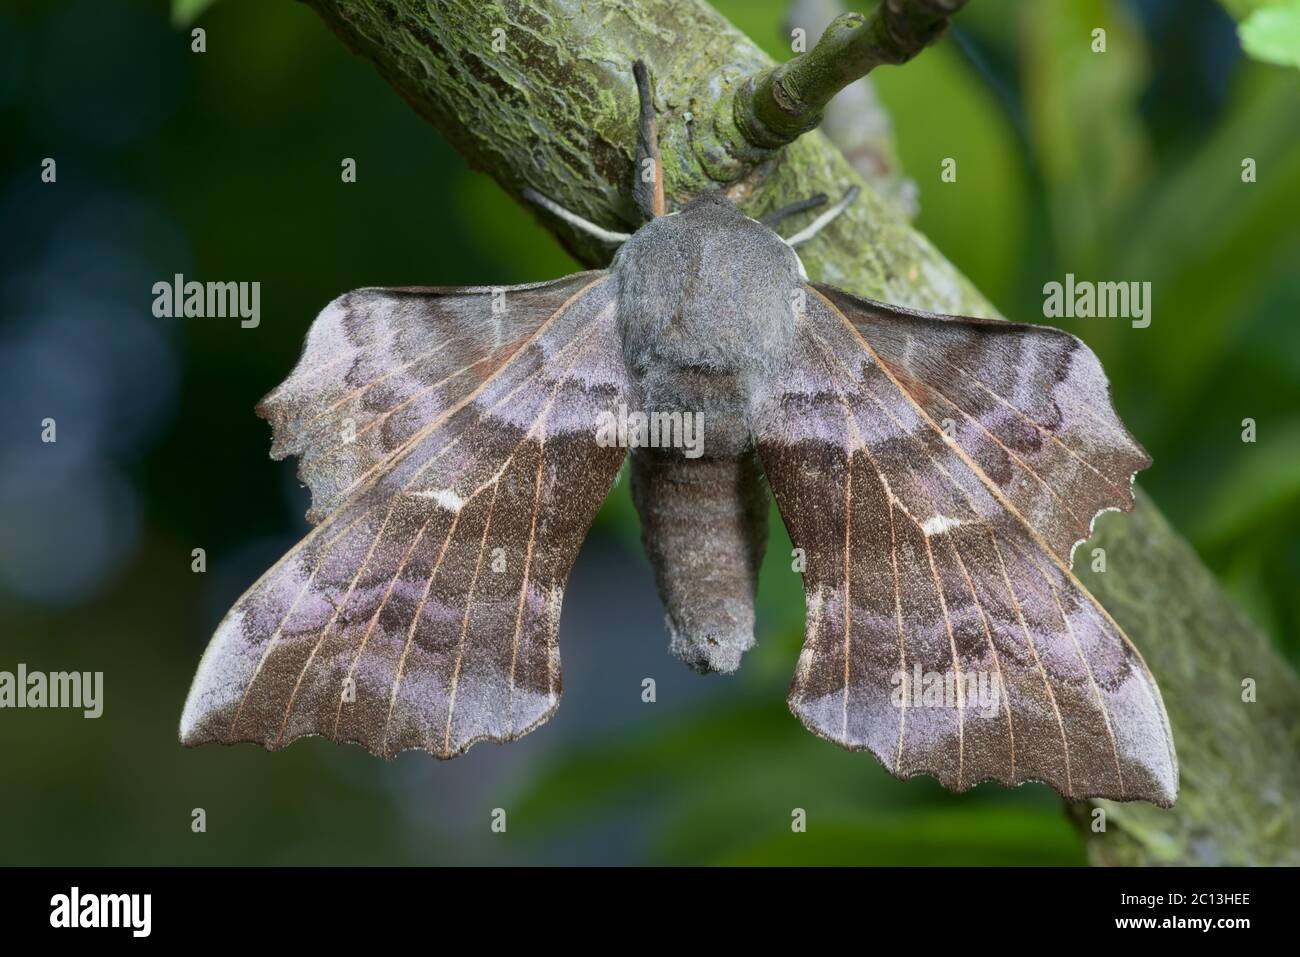 Le Poplar Hawk Moth est bien éclairé et présente ses ailes complexes, tandis qu'il est suspendu à une branche épaisse recouverte de lichen. Dos bleu et vert crème de jour Banque D'Images